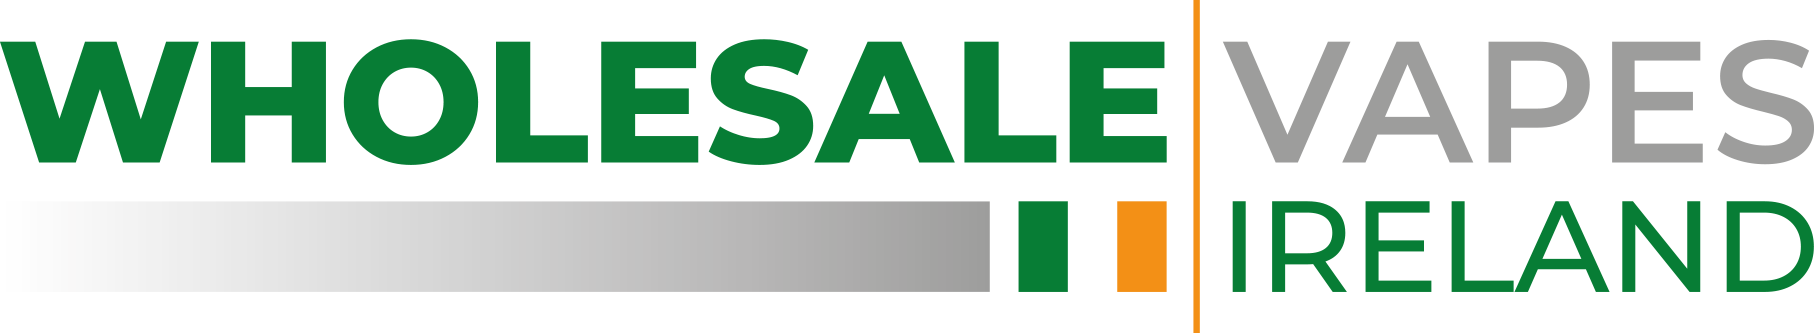 Wholesale Vapes Ireland Logo